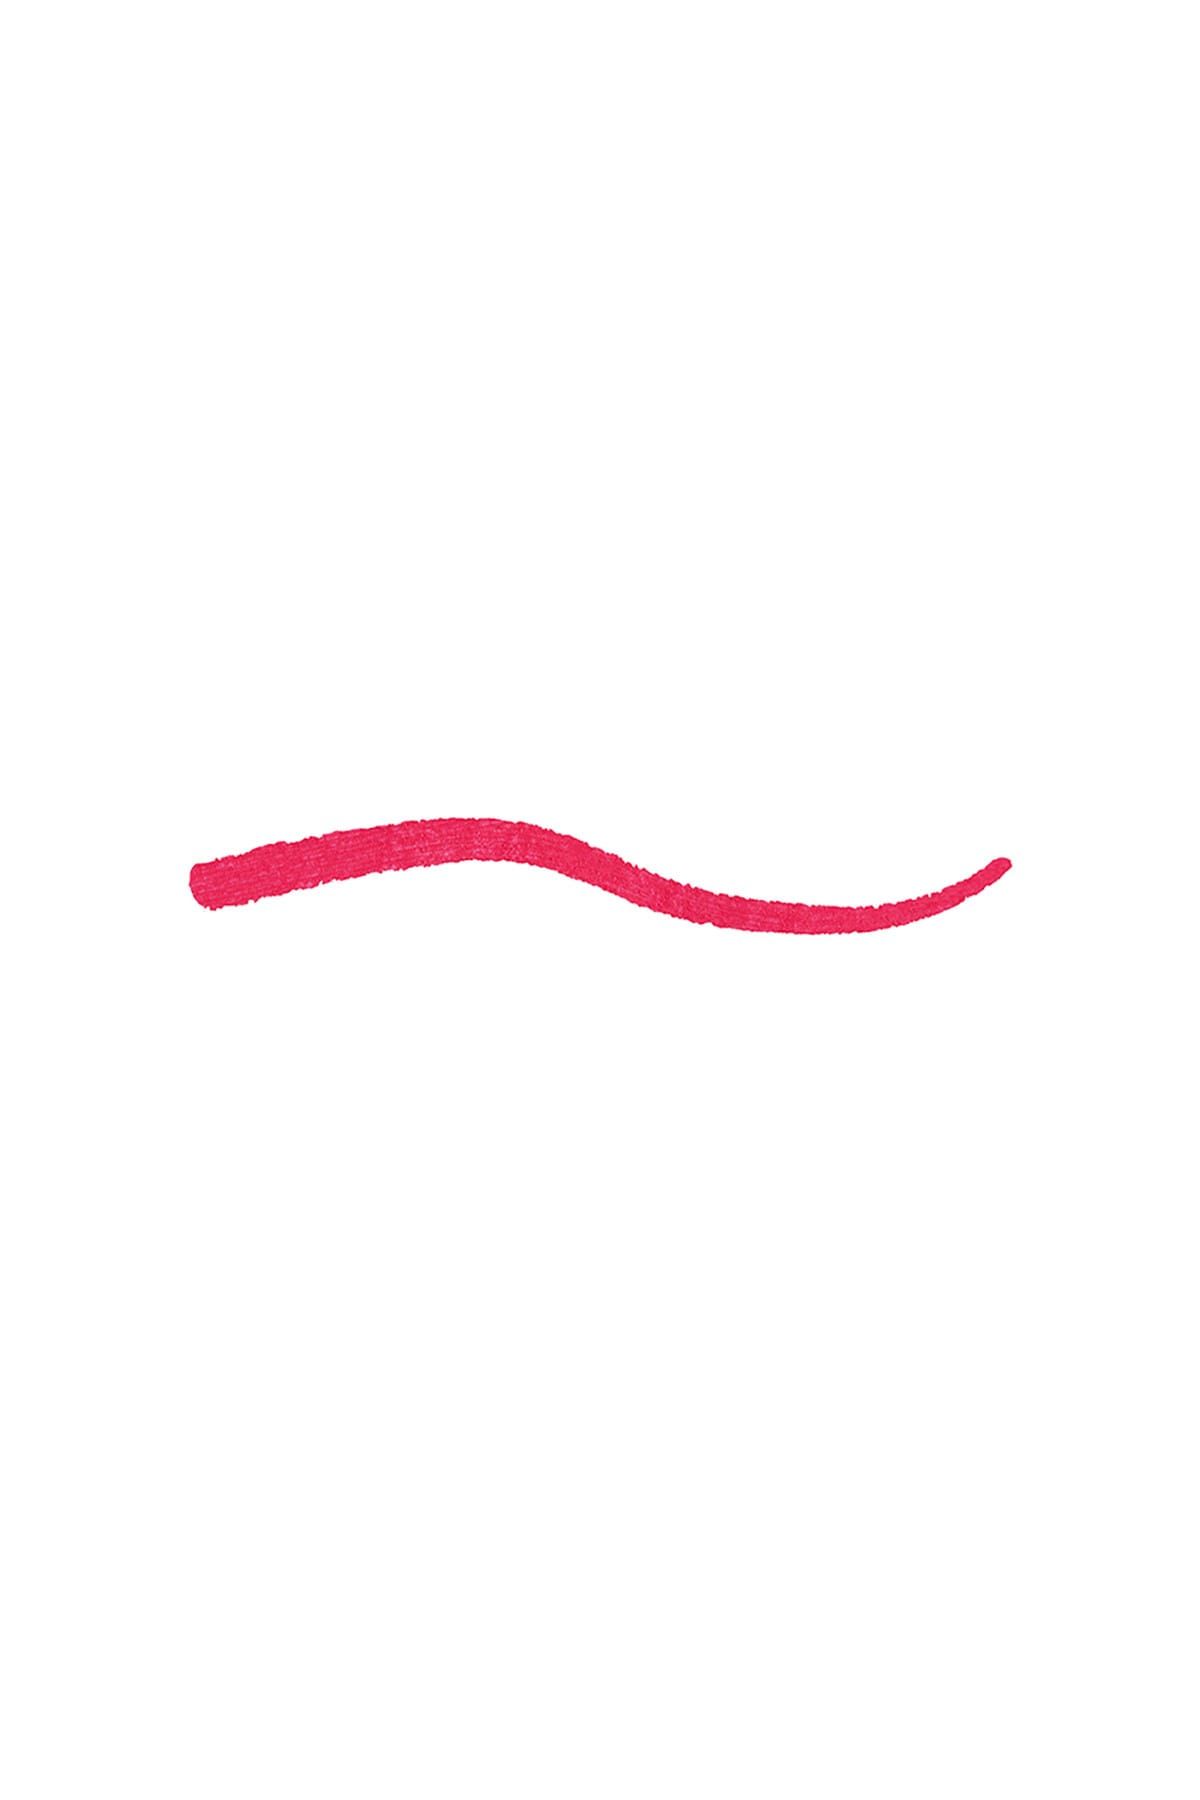 KIKO مداد لب Smart Fusion بافت نرم و روان شماره 522 رنگ قرمز زرشکی